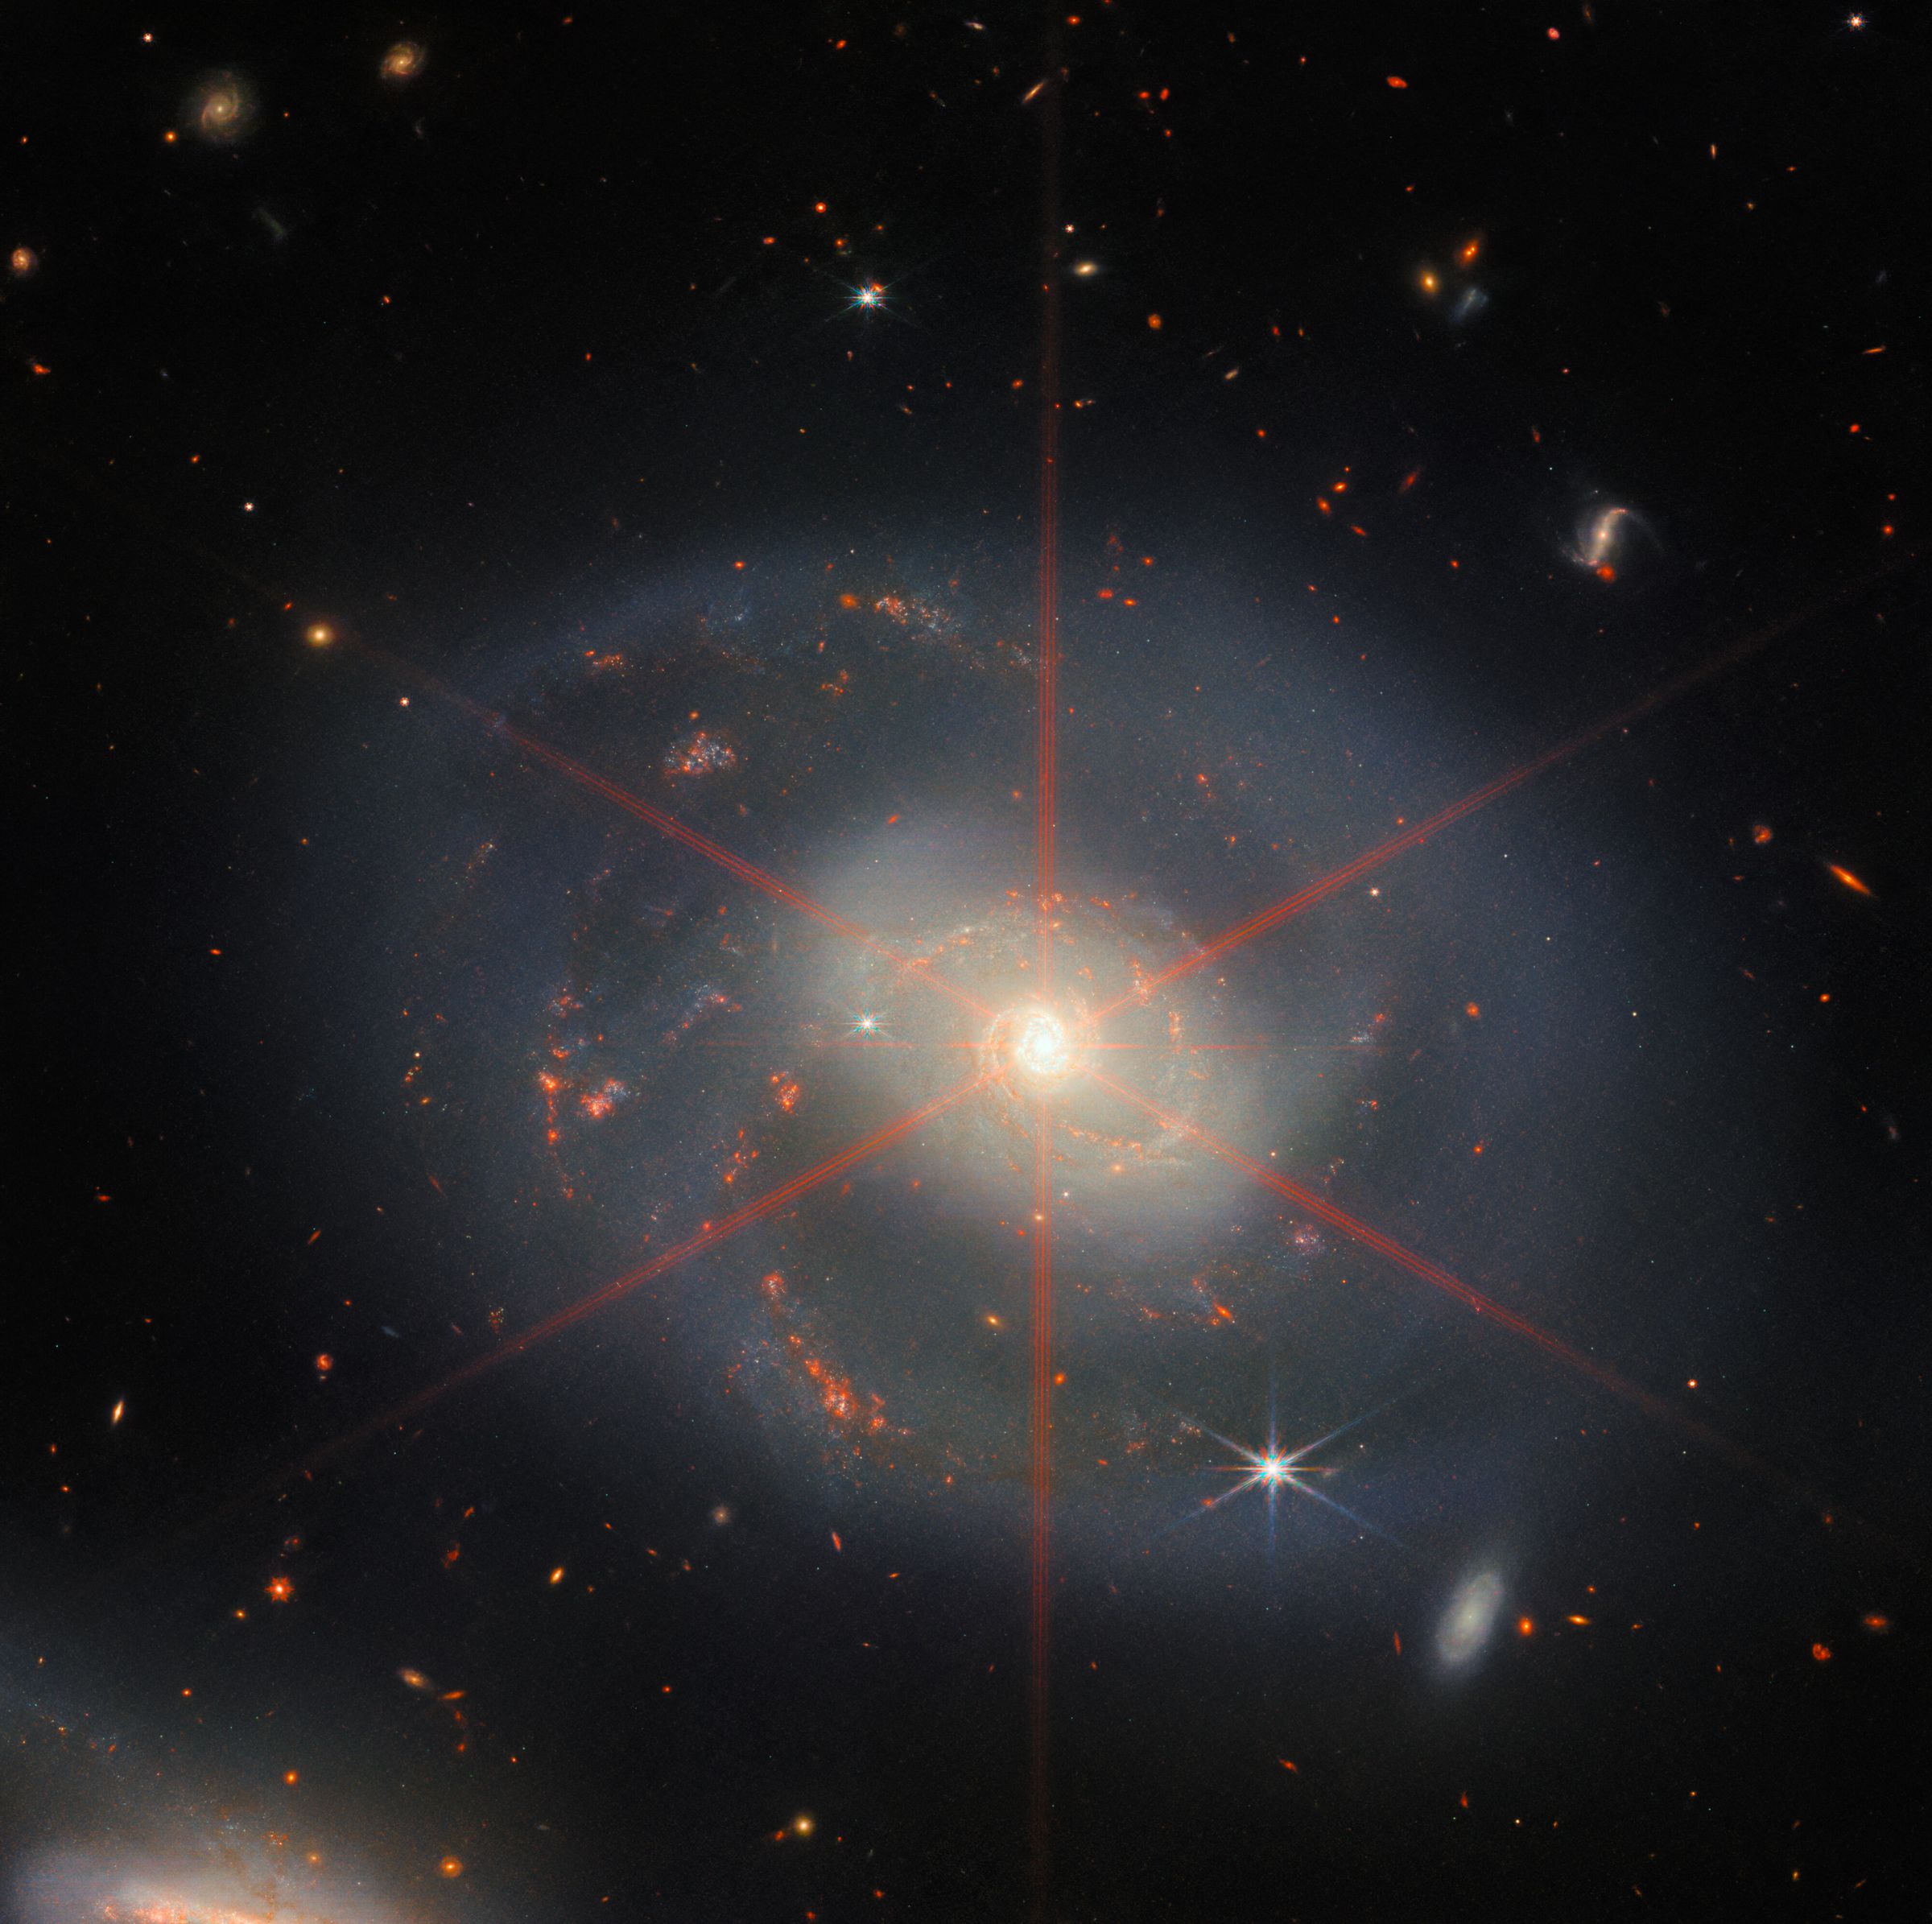 Deze afbeelding toont een spiraalstelsel dat wordt gedomineerd door een helder centraal gebied.  Het sterrenstelsel heeft blauwpaarse tinten met oranjerode gebieden gevuld met sterren.  Er is ook een grote diffractiepiek te zien, die verschijnt als een stellair patroon boven het centrale gebied van de melkweg.  Veel sterren en sterrenstelsels vullen het achtergrondlandschap